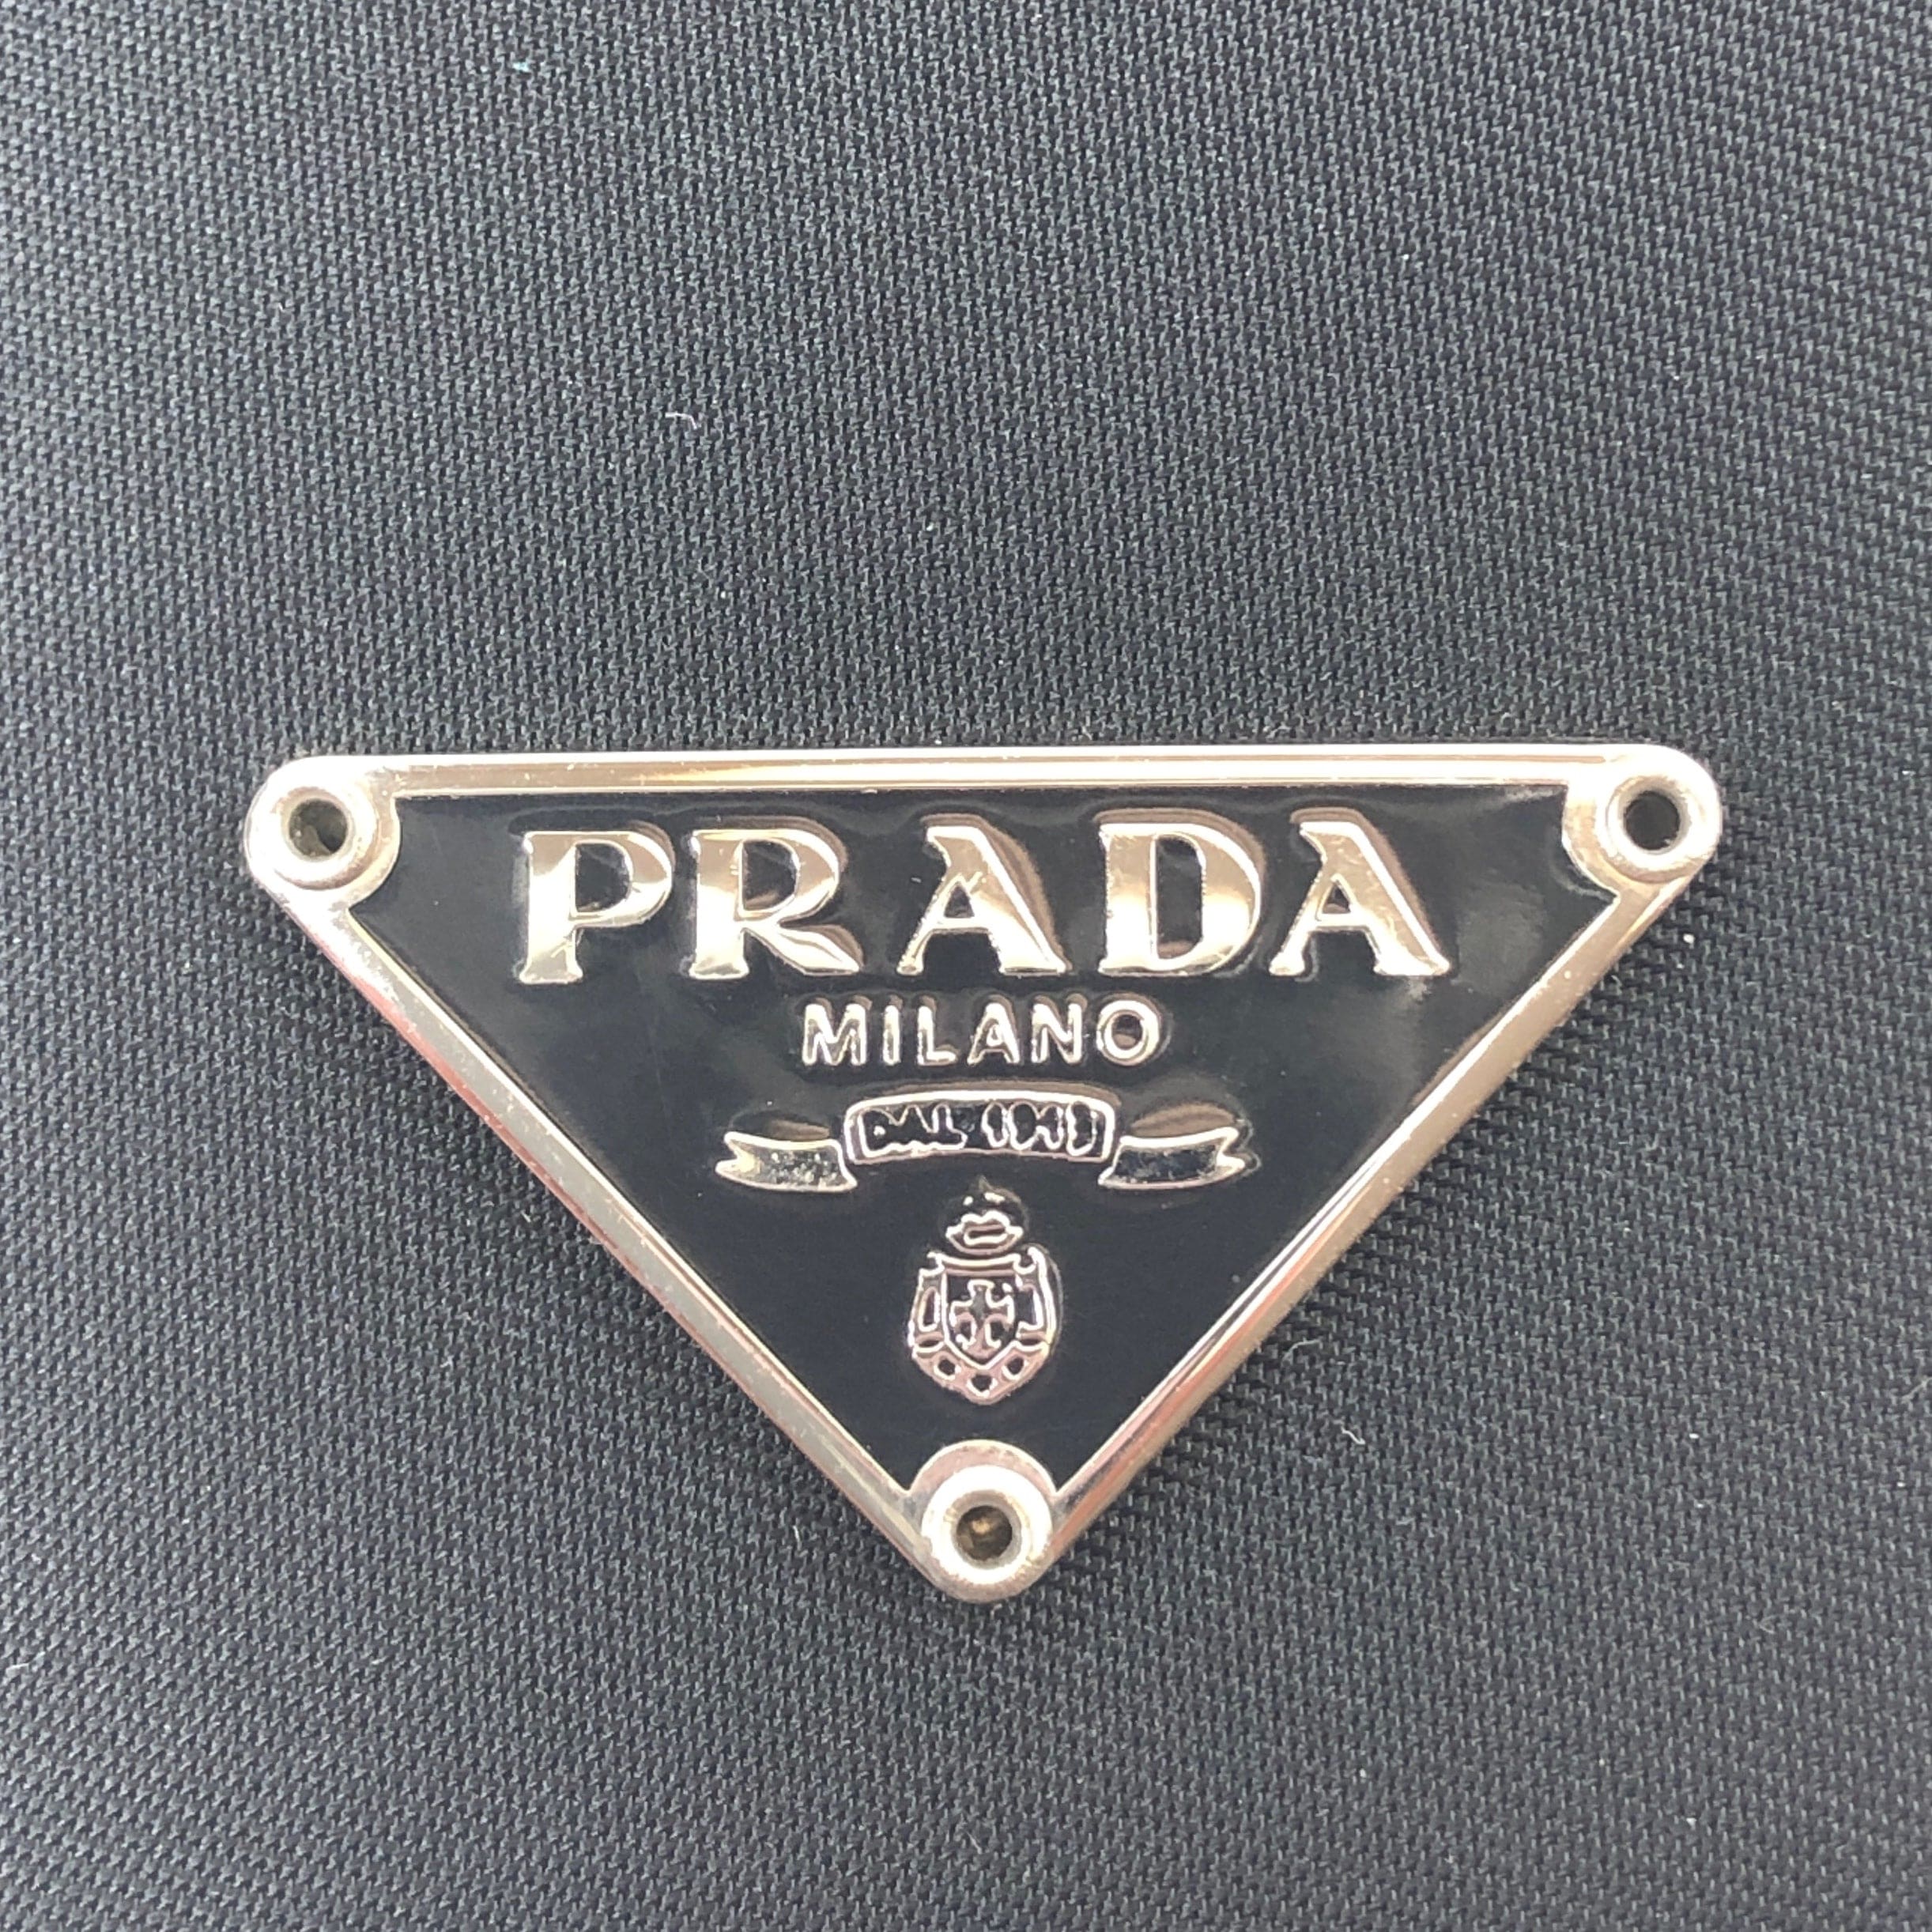 Prada Prada Nylon Bag Key Case Chain 4280924